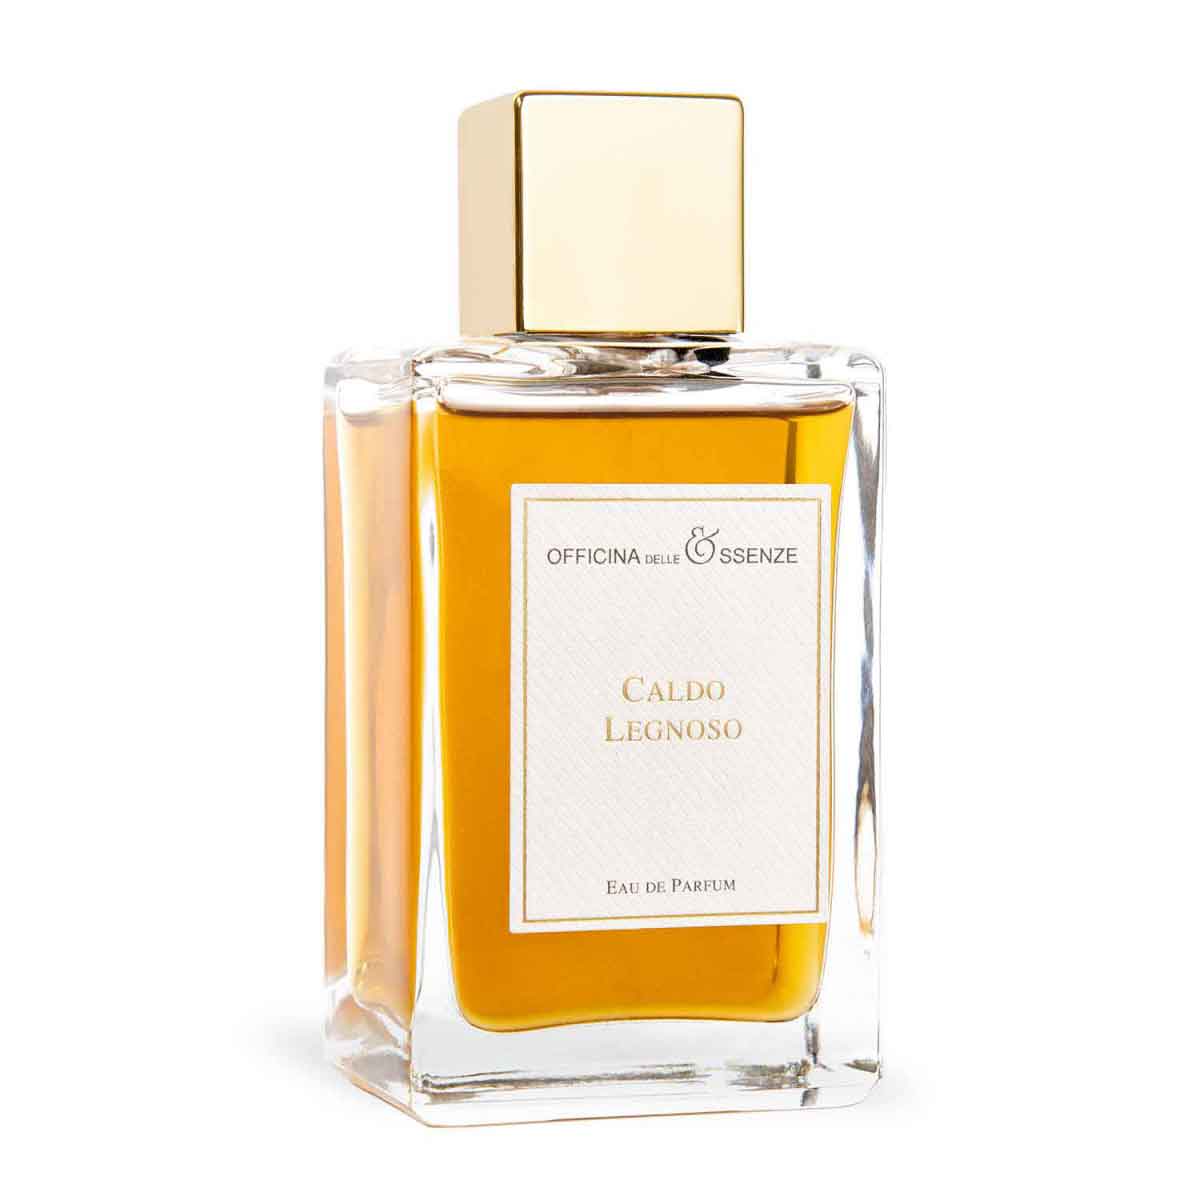 Caldo Legnoso Eau de Parfum by Officina delle Essenze